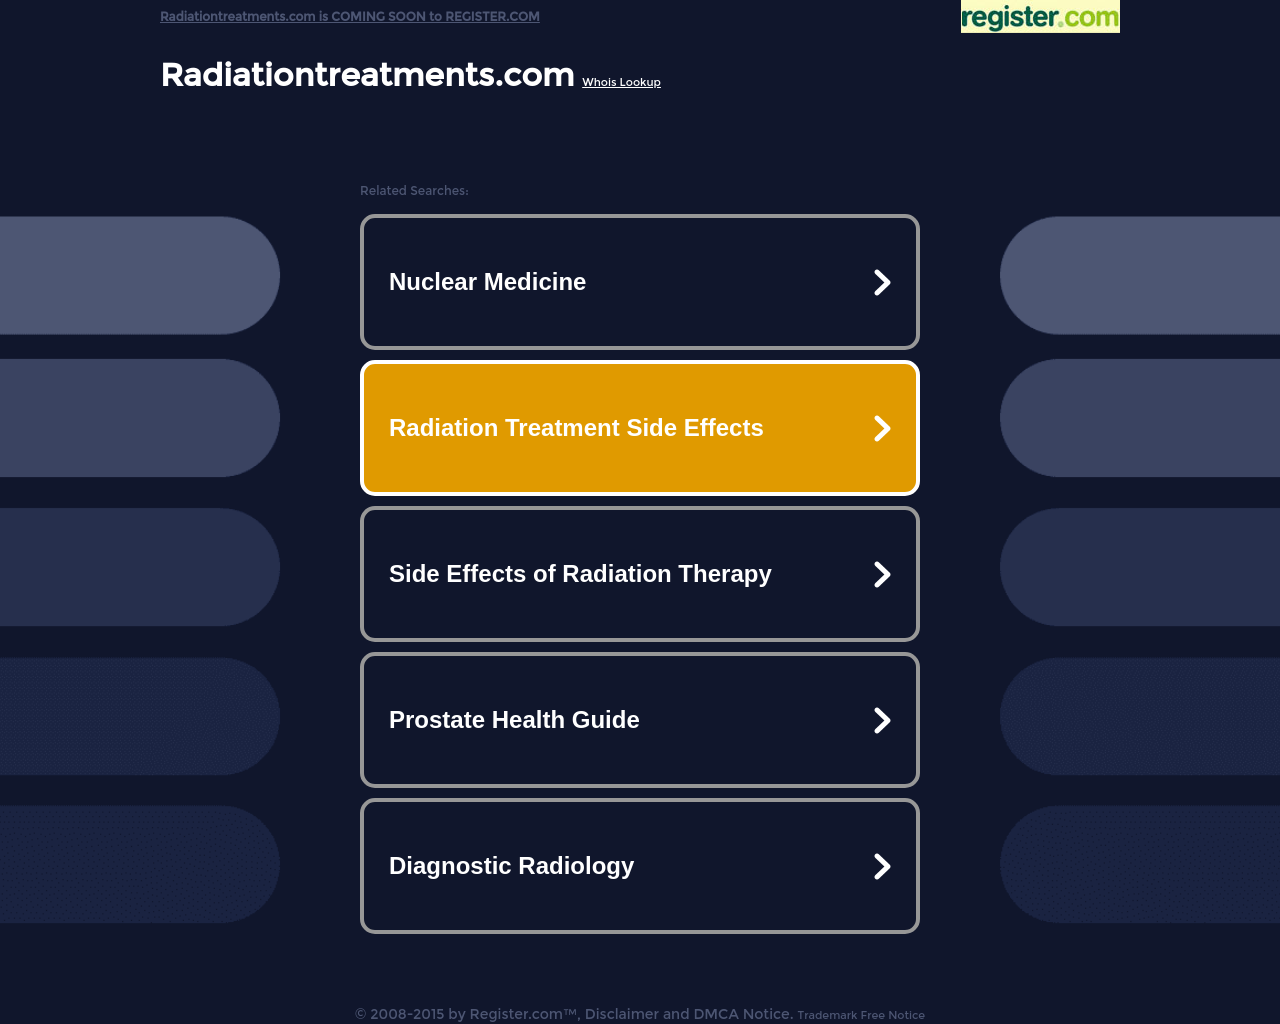 radiationtreatments.com